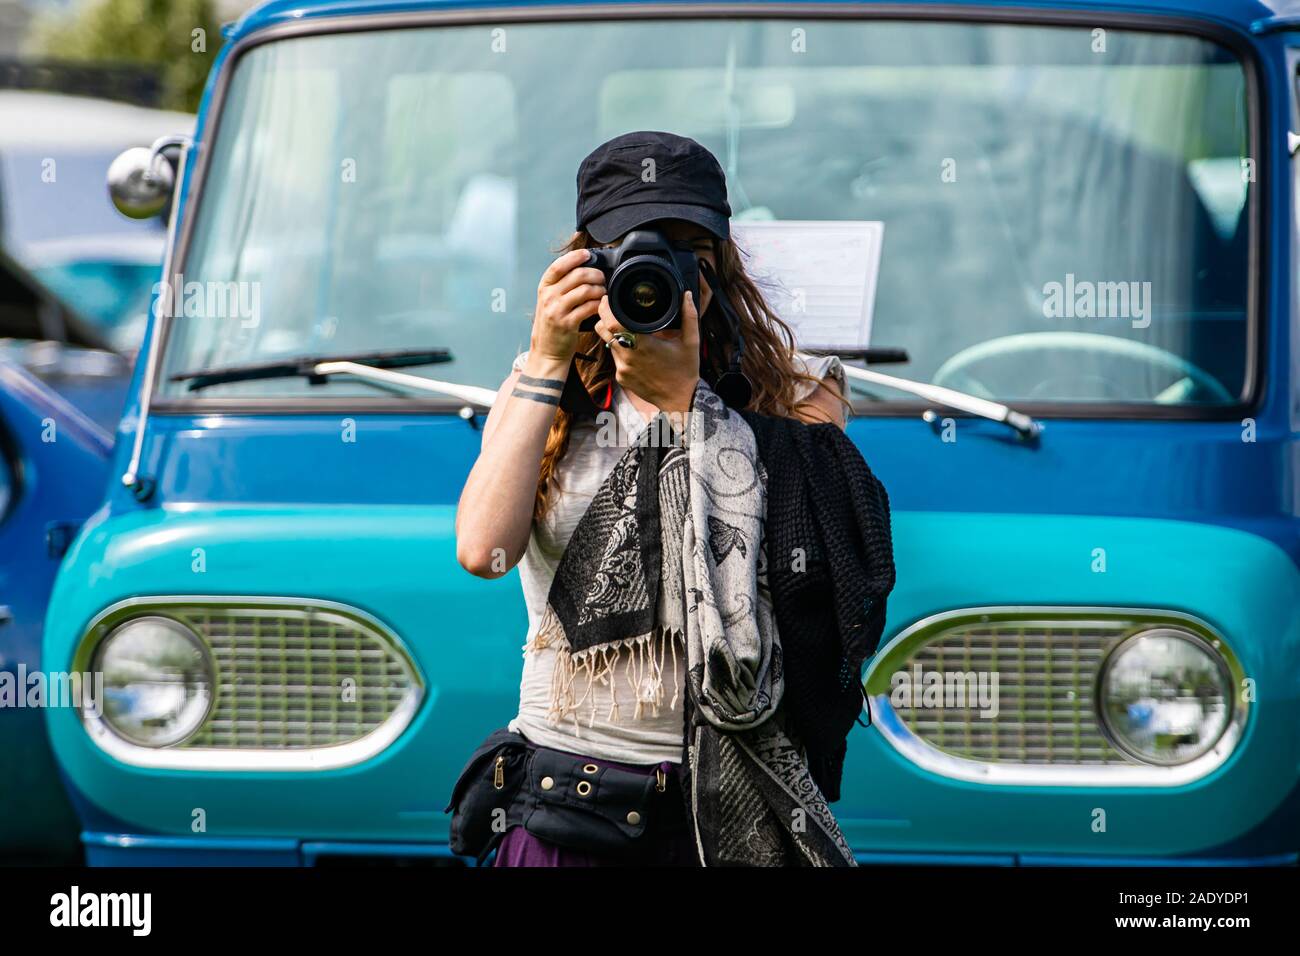 Messa a fuoco selettiva su giovani caucasici donna fotografo tiene la fotocamera reflex digitale nella parte anteriore del vecchio blu van, indossare un cappello nero sciarpa, durante un'auto d'epoca mostrano Foto Stock